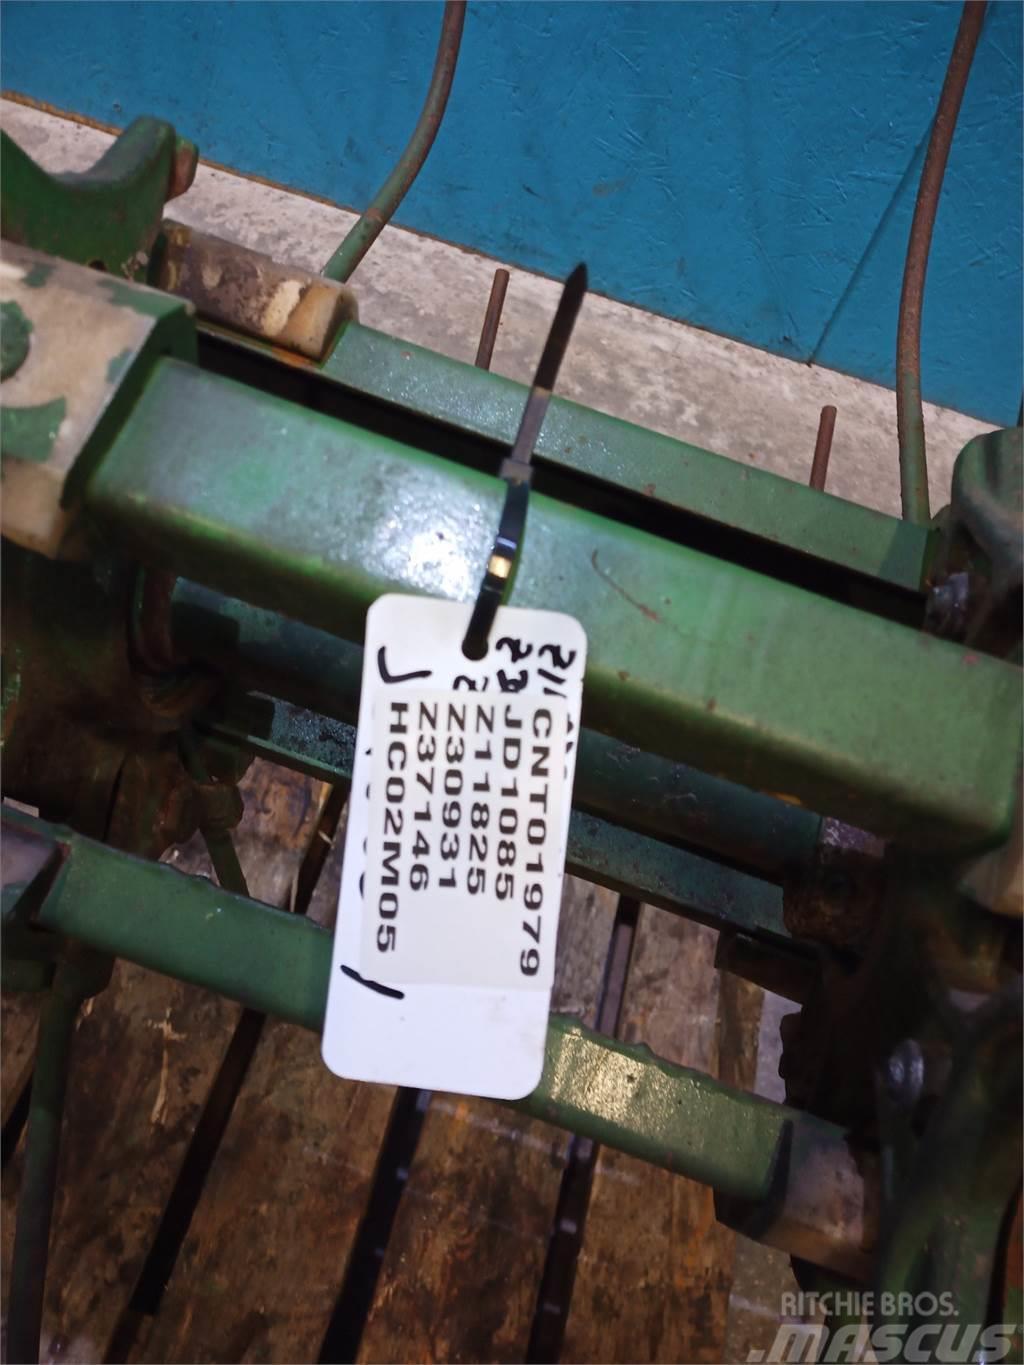 John Deere 1085 Combine harvester spares & accessories